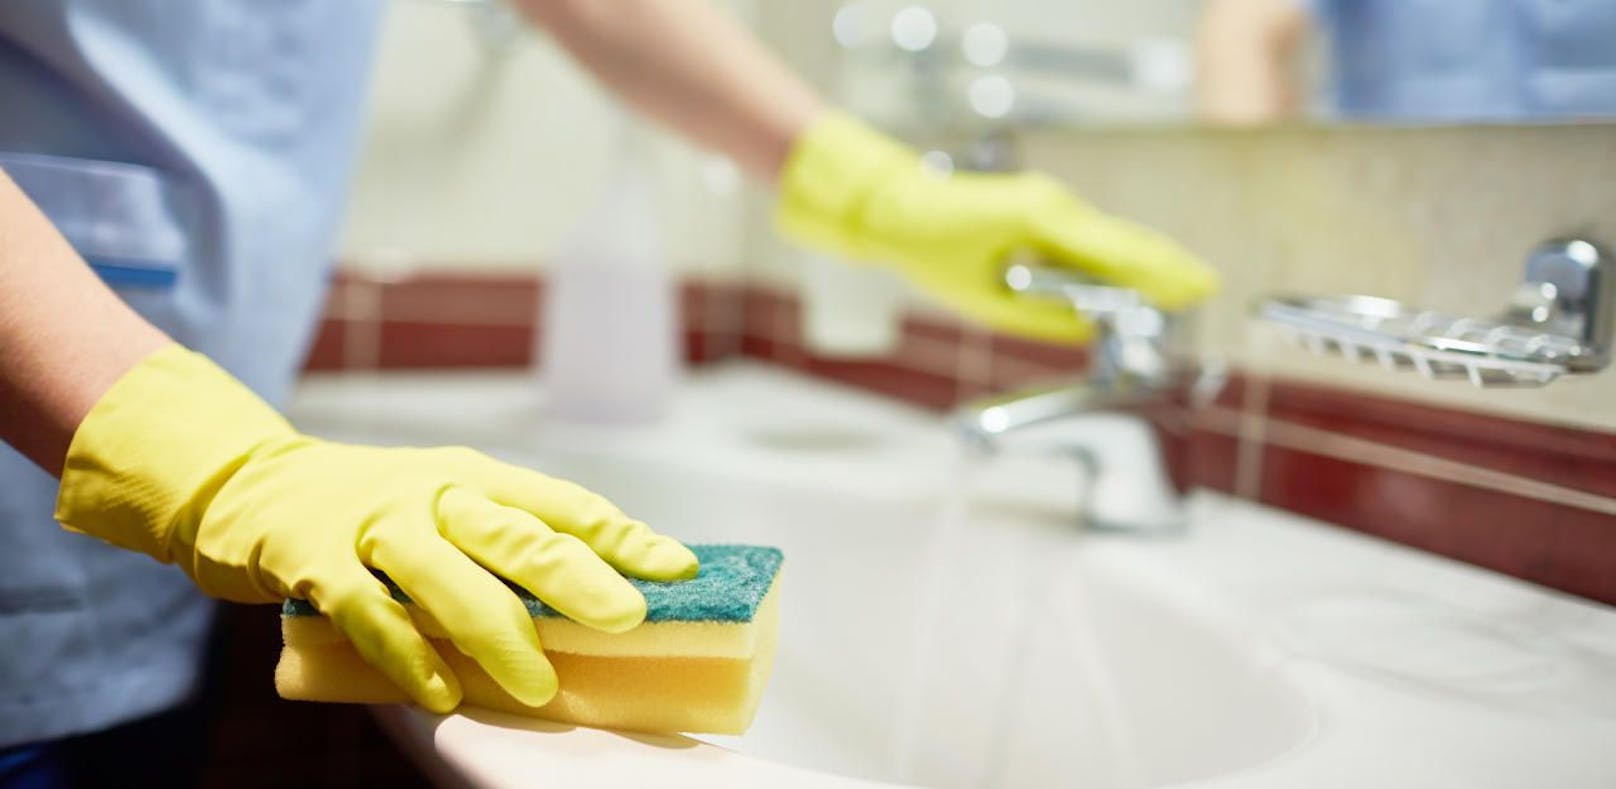 Durchschnittlich verletzen sich in NÖ 3.400 Menschen beim Putzen.